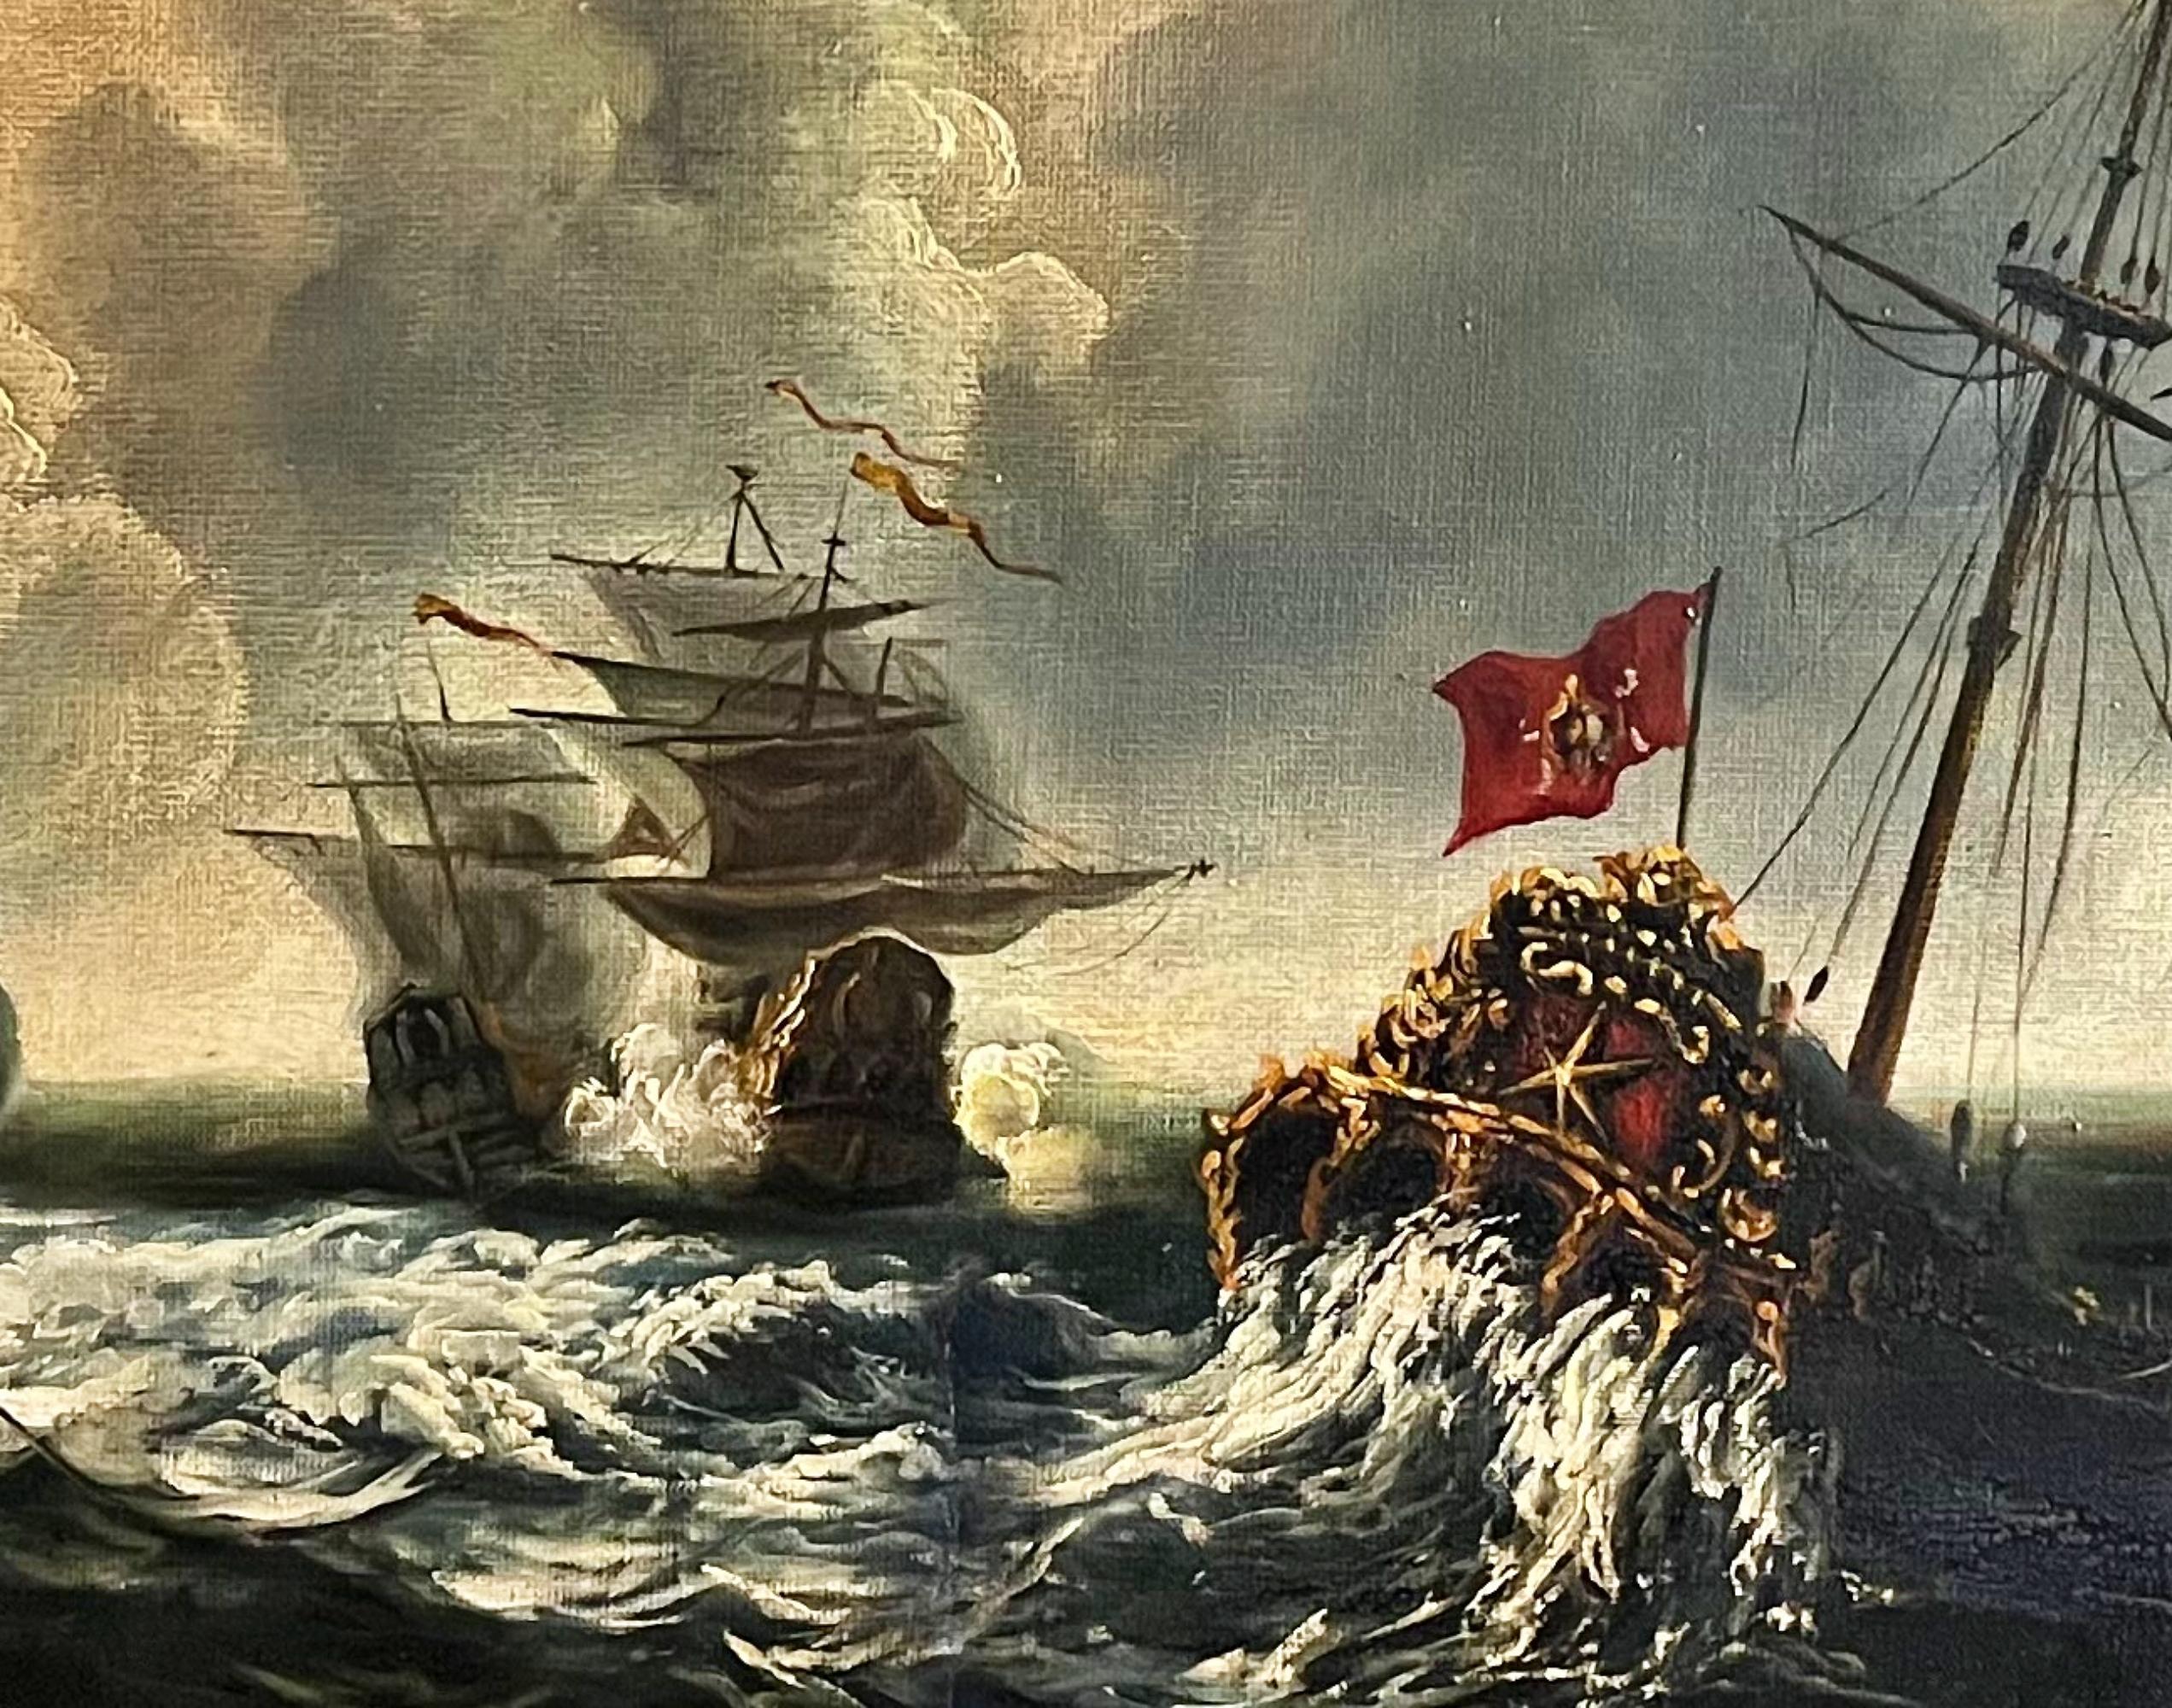 Peinture de l'école espagnole « bataille navale » du 19ème siècle

huile sur toile
115cm x 48cm
très bonnes conditions
sans cadre